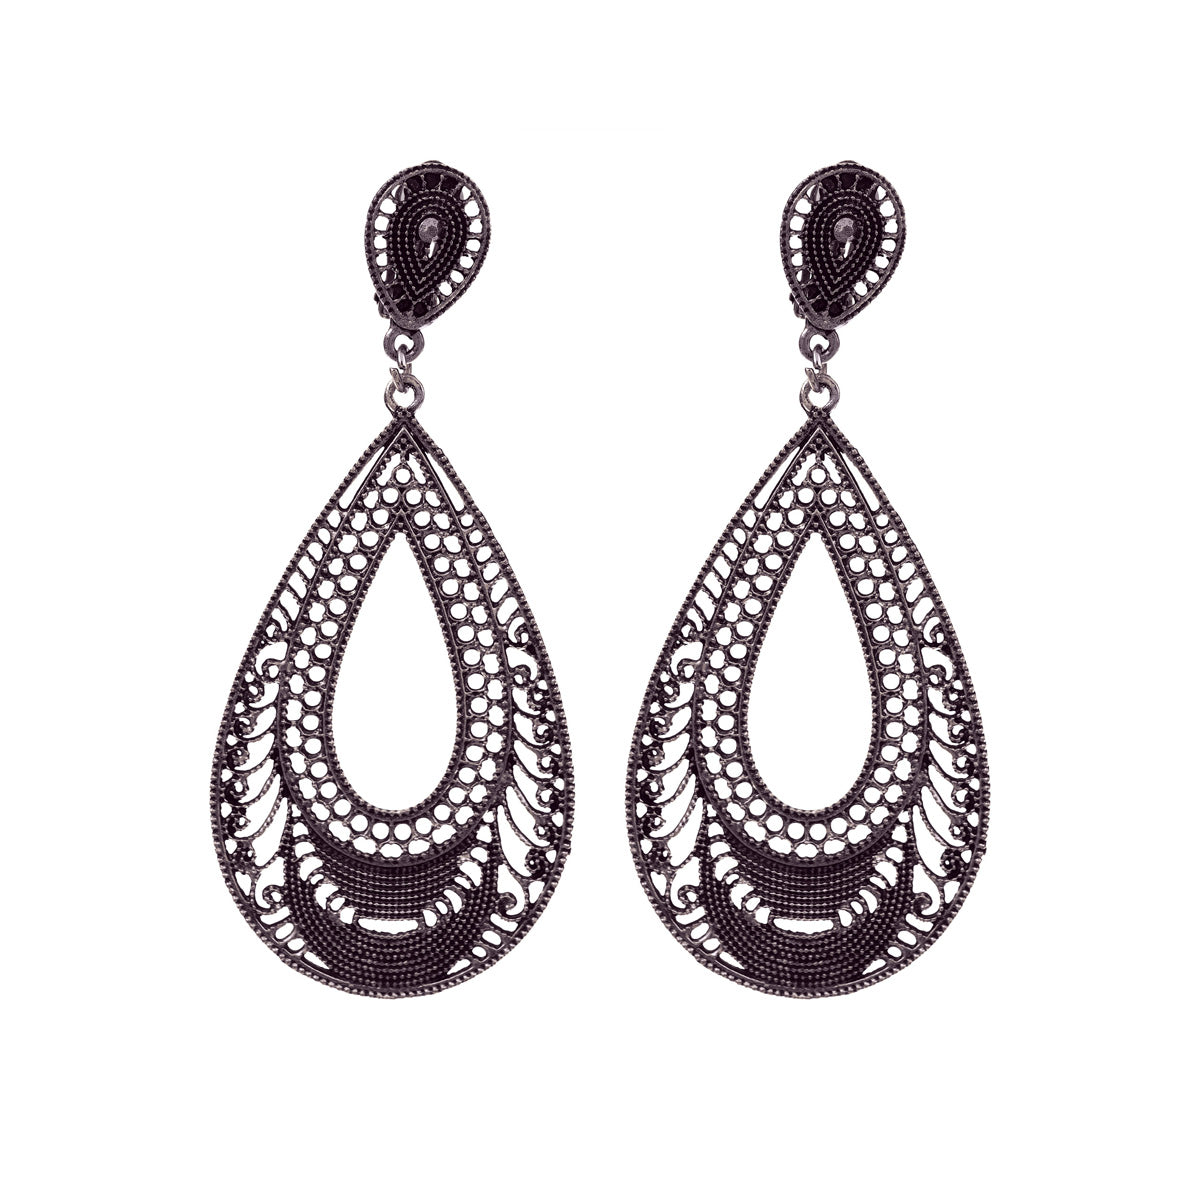 Big oval clip earrings